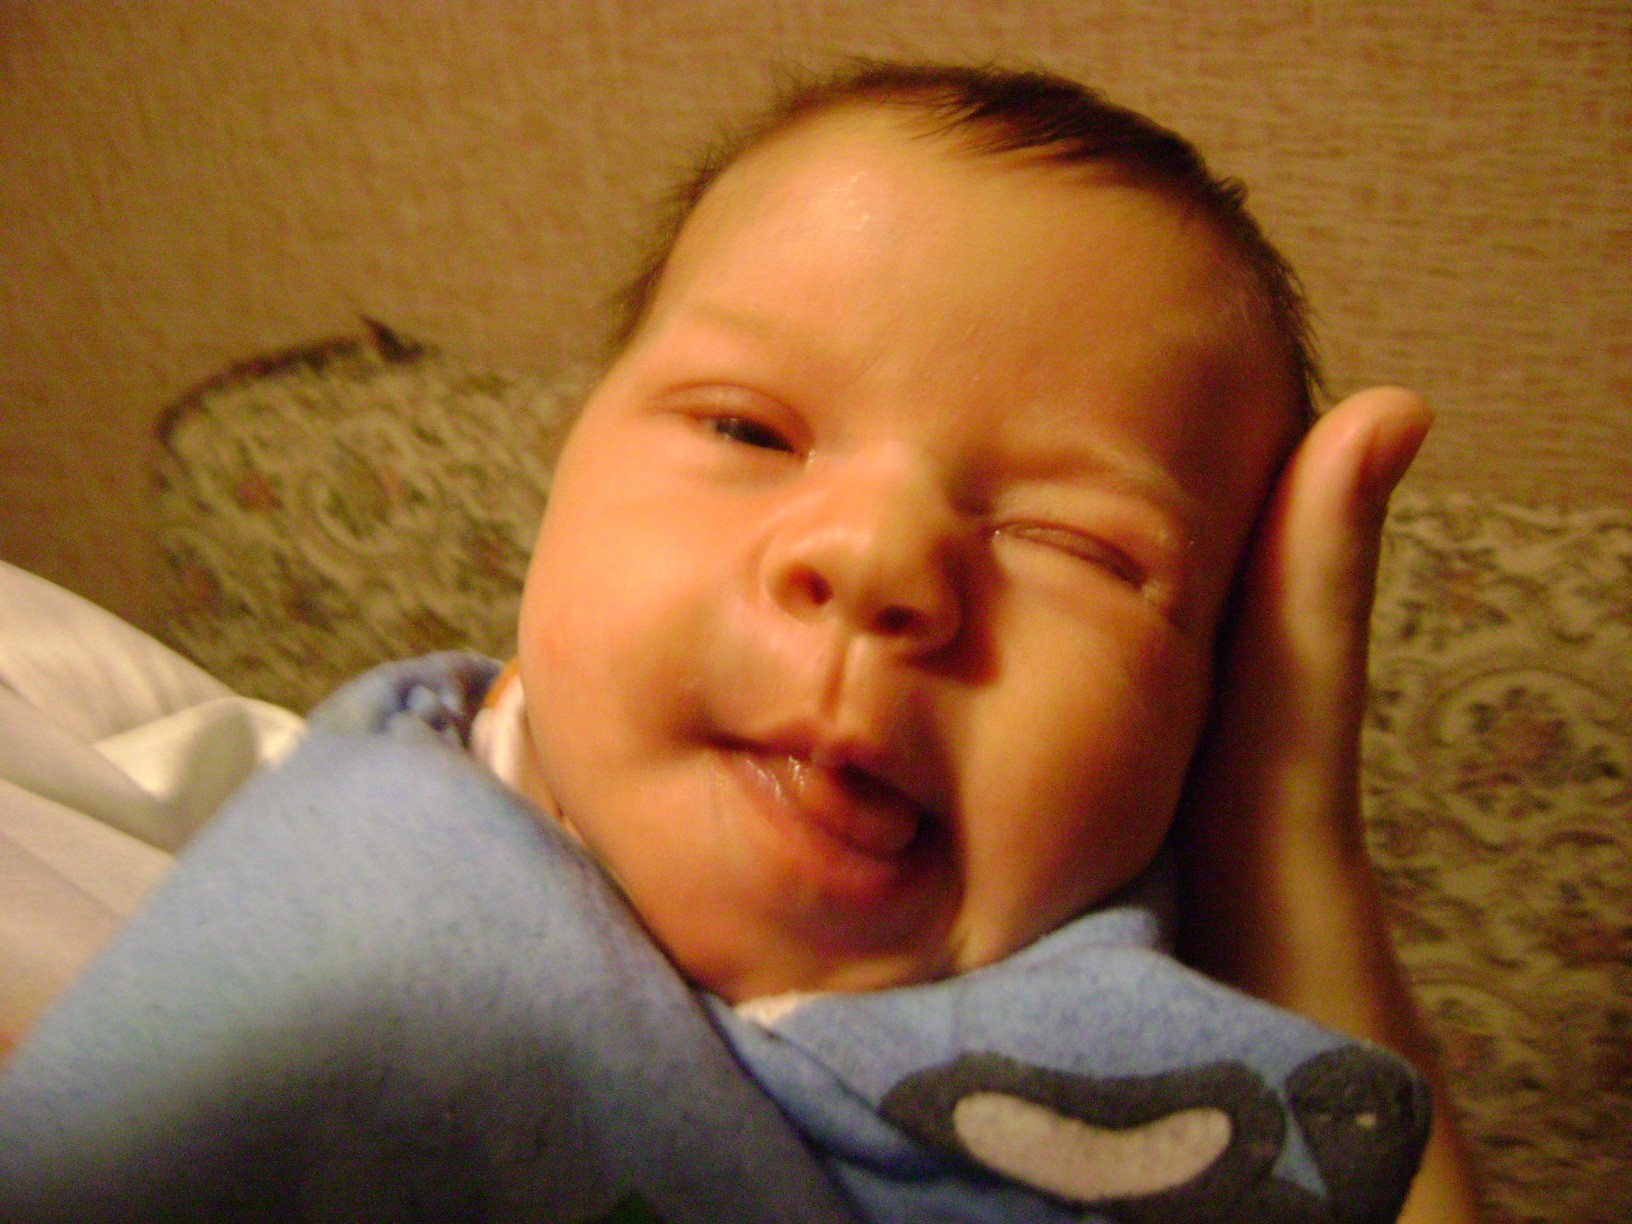 дети ребенок ребенок один новорожденный кровать крышка мальчик портрет выражение лица сон полулежа невинность младенчество потомство спальня в помещении малыш подсосе счастье